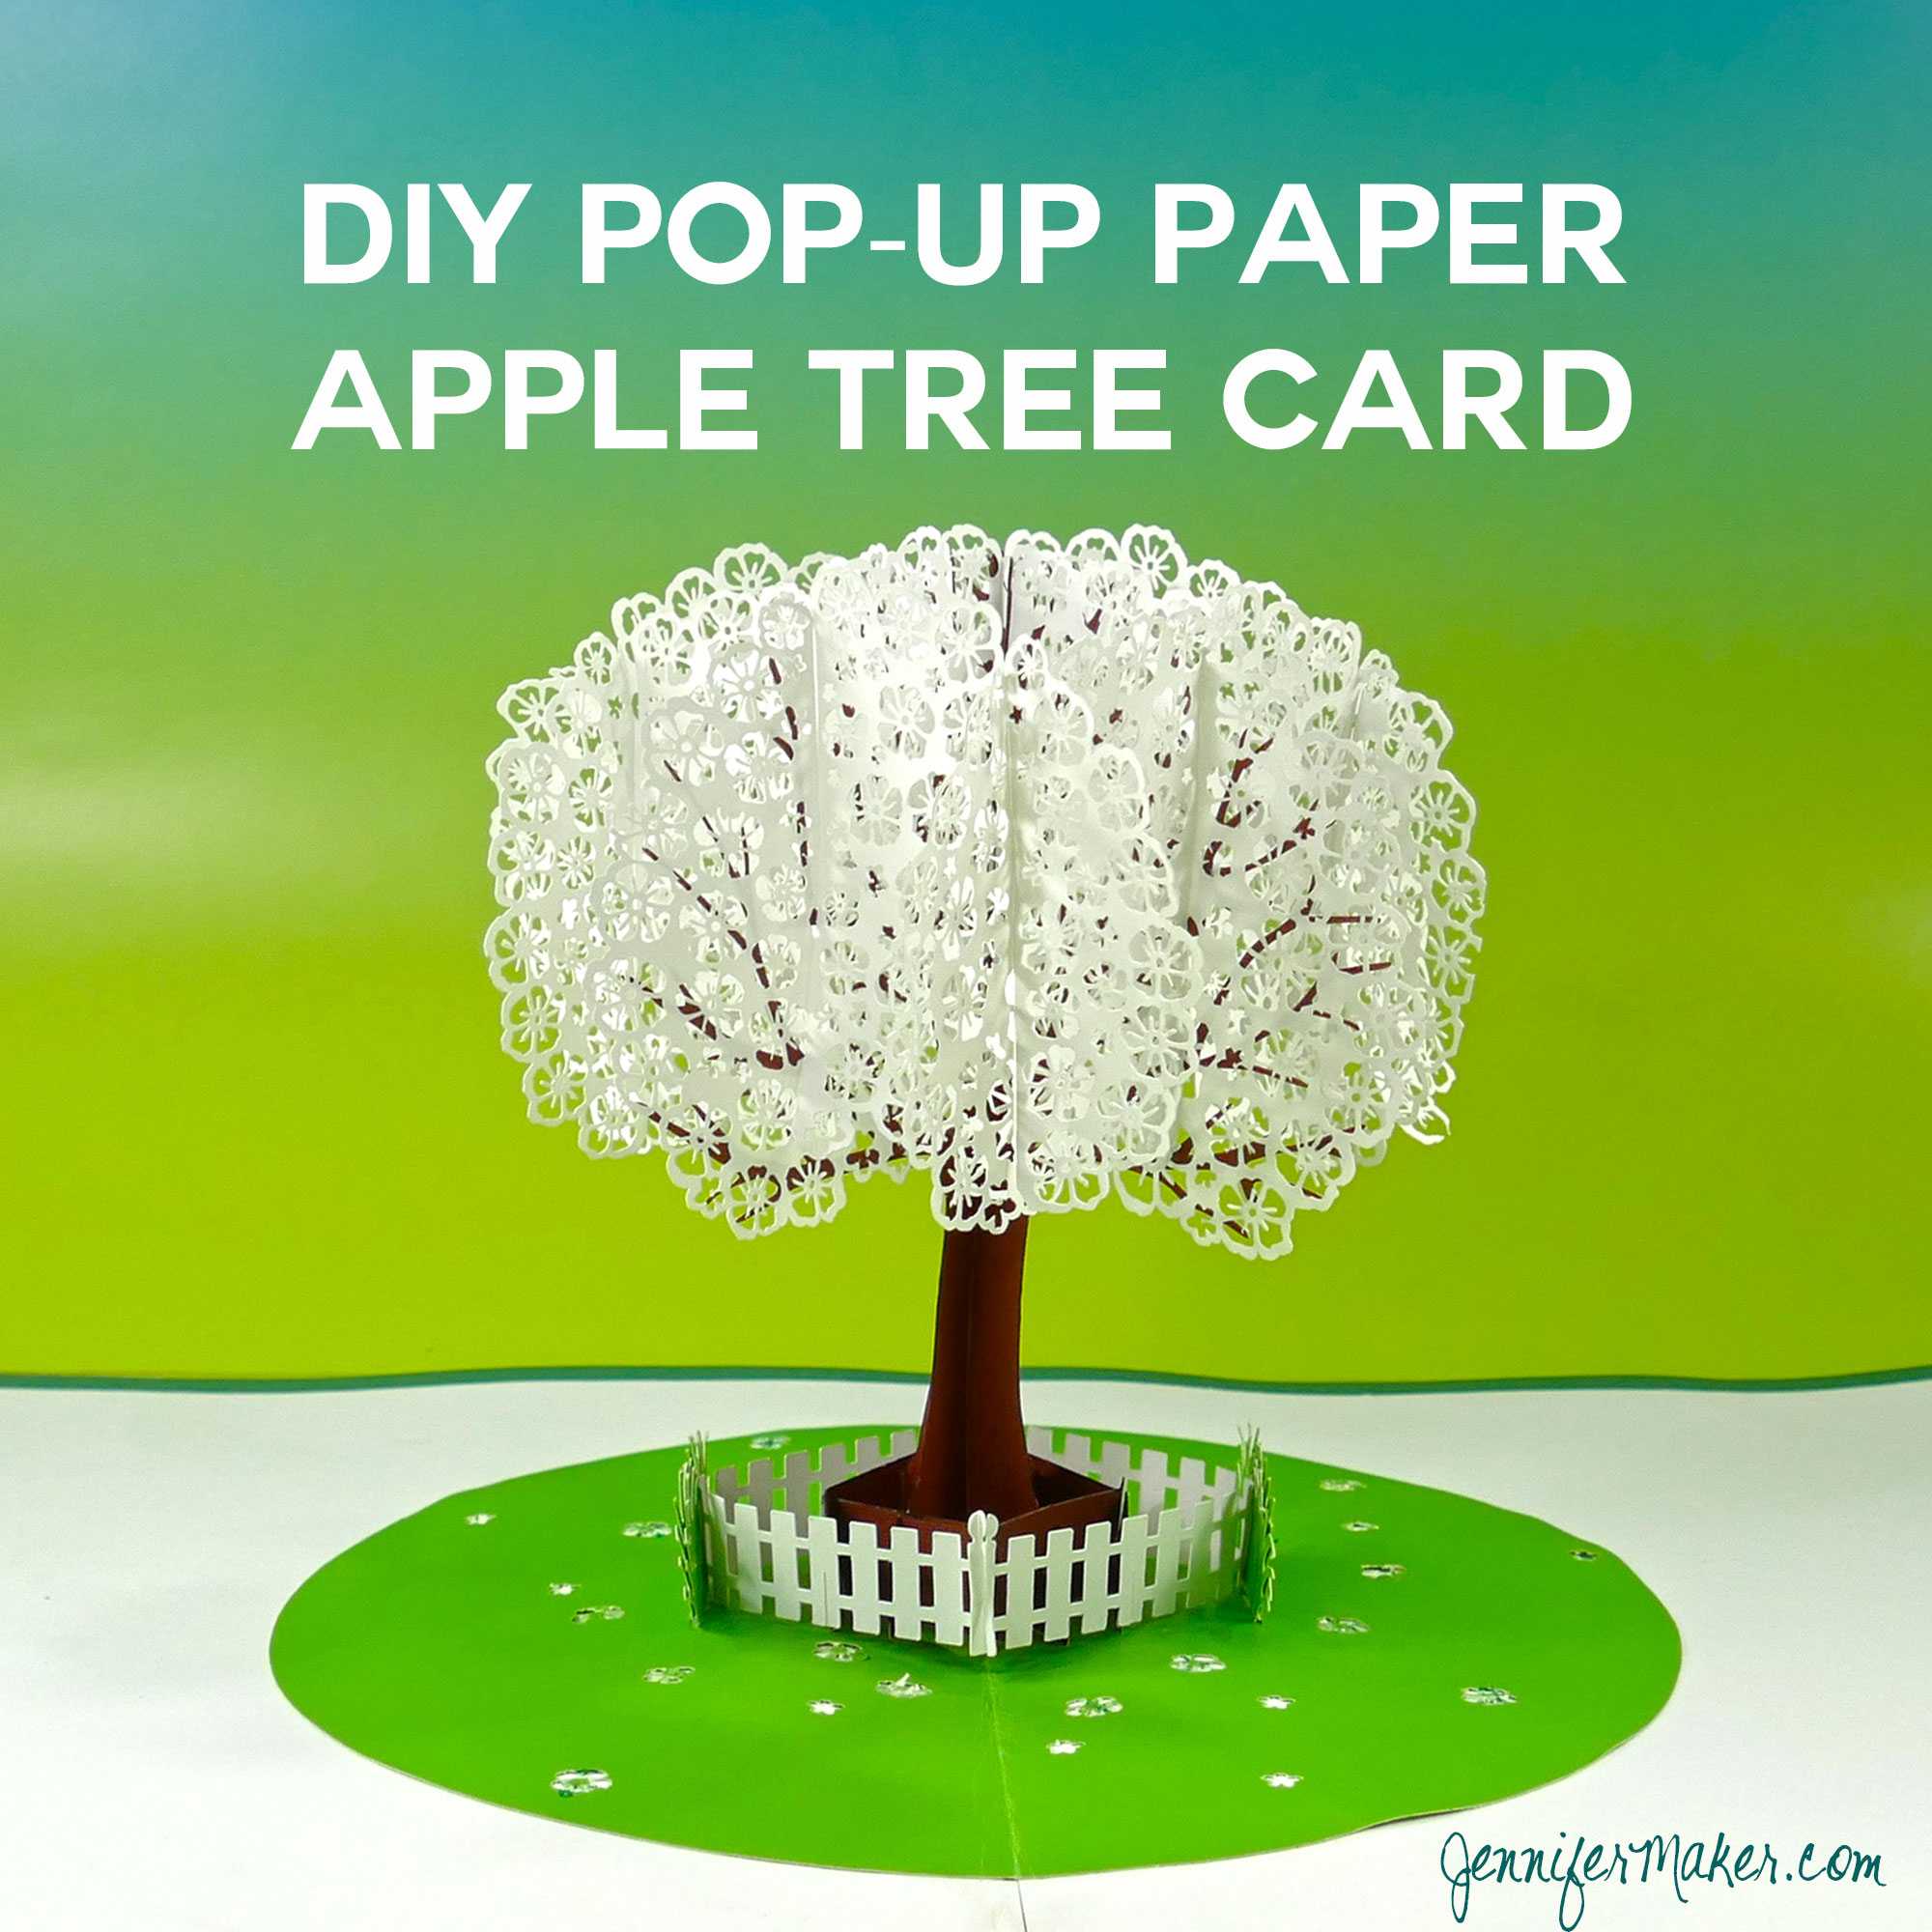 Pop Up Paper Apple Tree Card (3D Sliceform) - Jennifer Maker Within Pop Up Tree Card Template